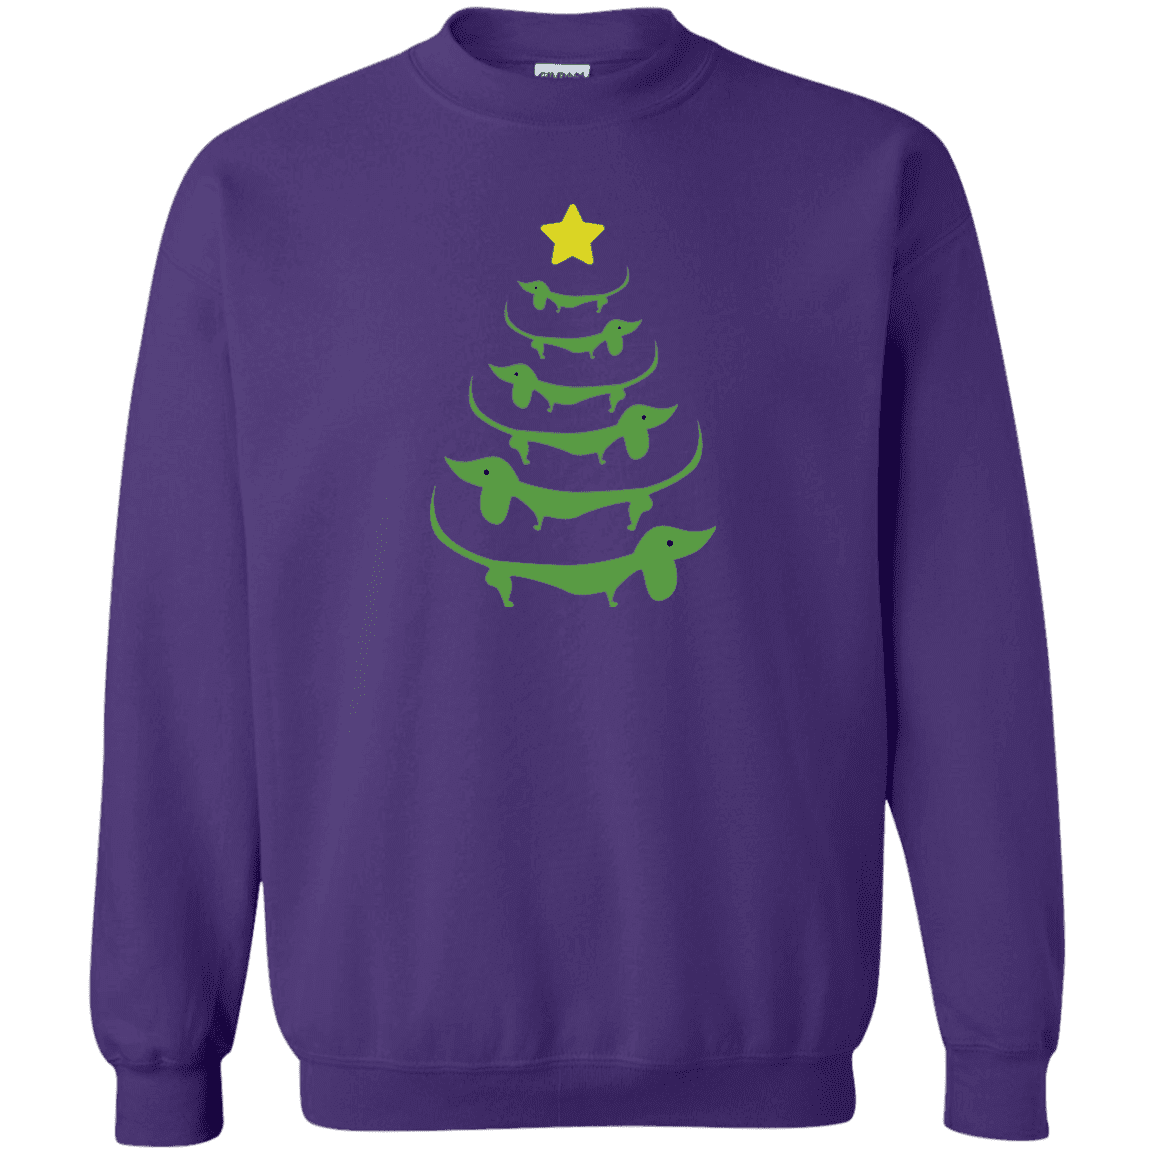 Dog Christmas Tree - Sweatshirt.